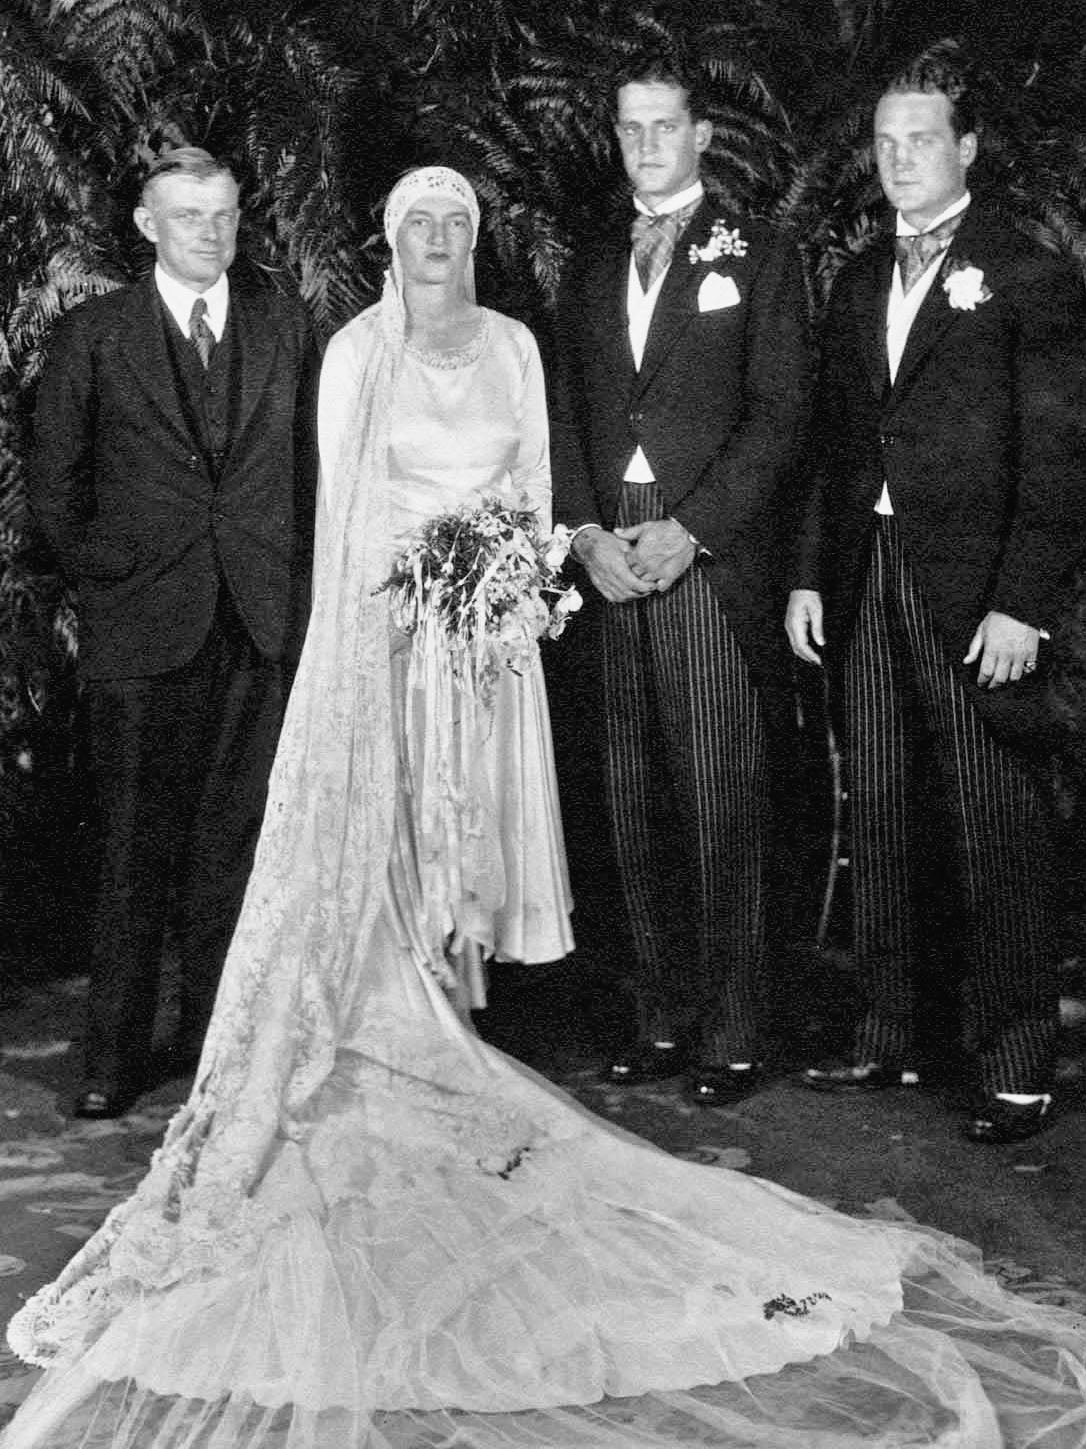 Gertie married Sidney Legendre in 1929 in New York